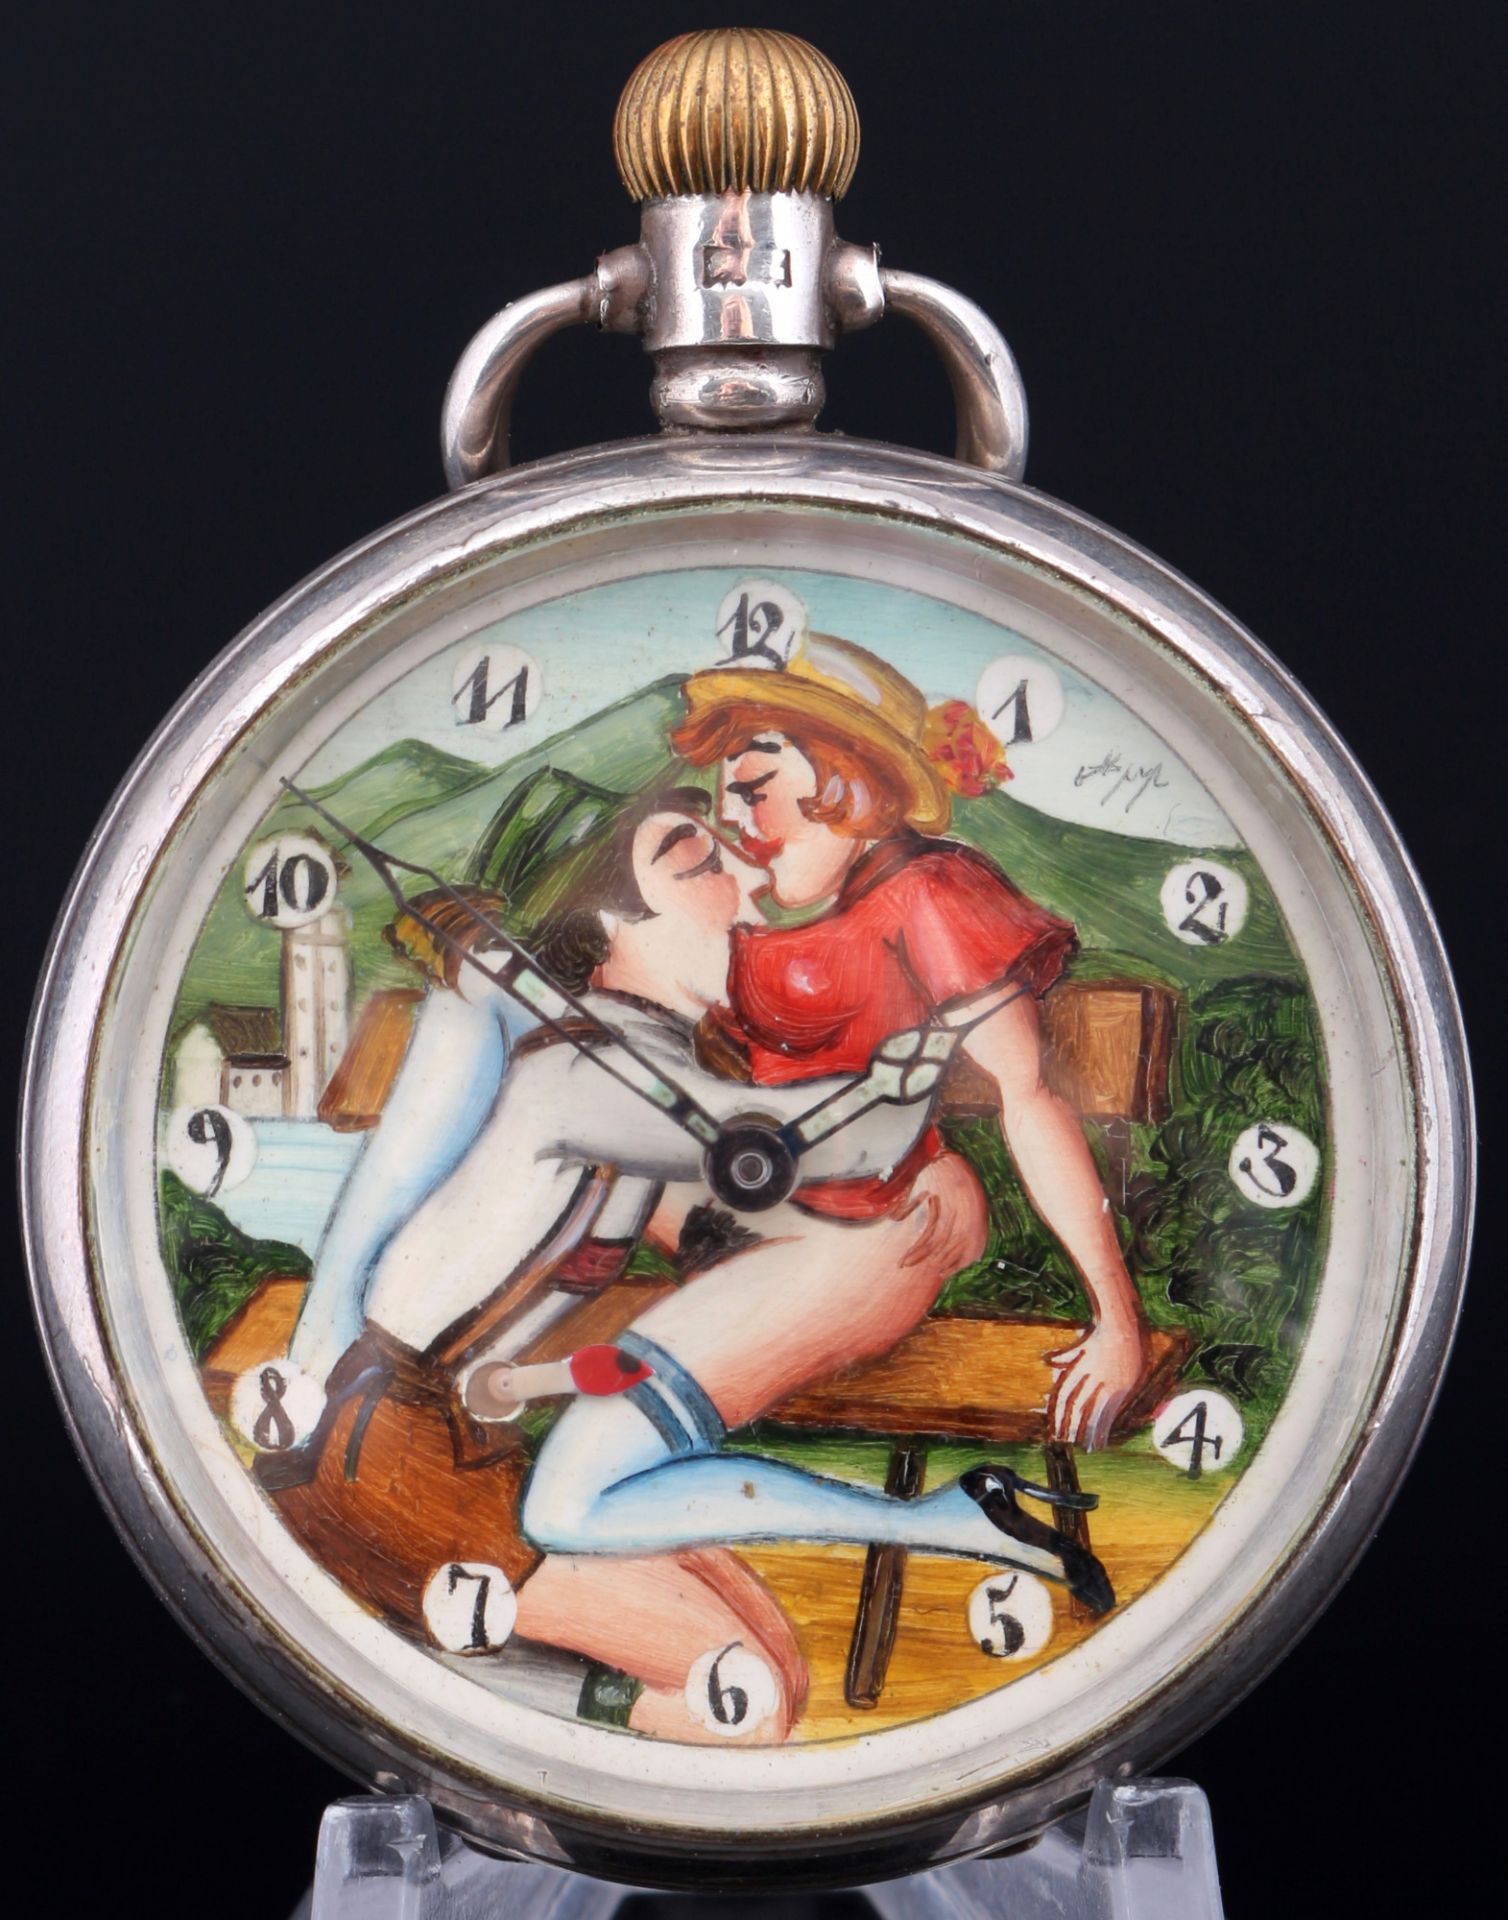 925 Silber Taschenuhr mit erotischer Szene Tiroler Paar auf der Bank,